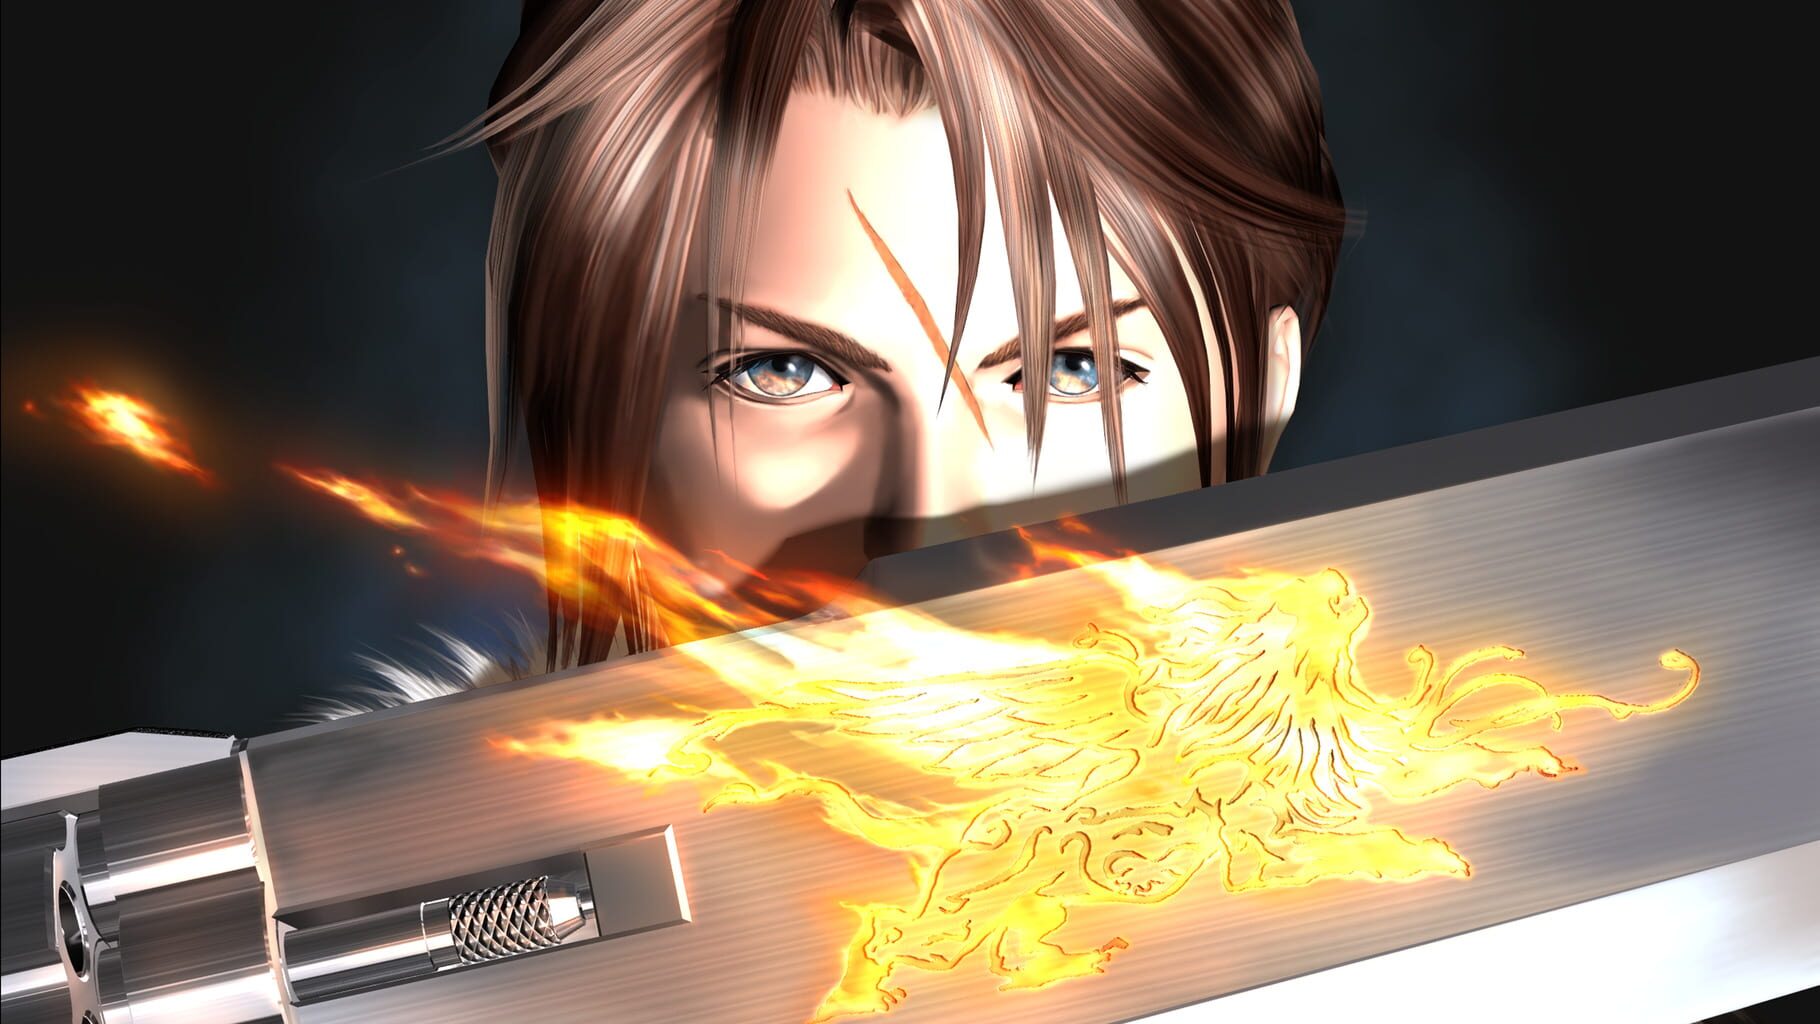 Artwork for Final Fantasy VIII Remastered